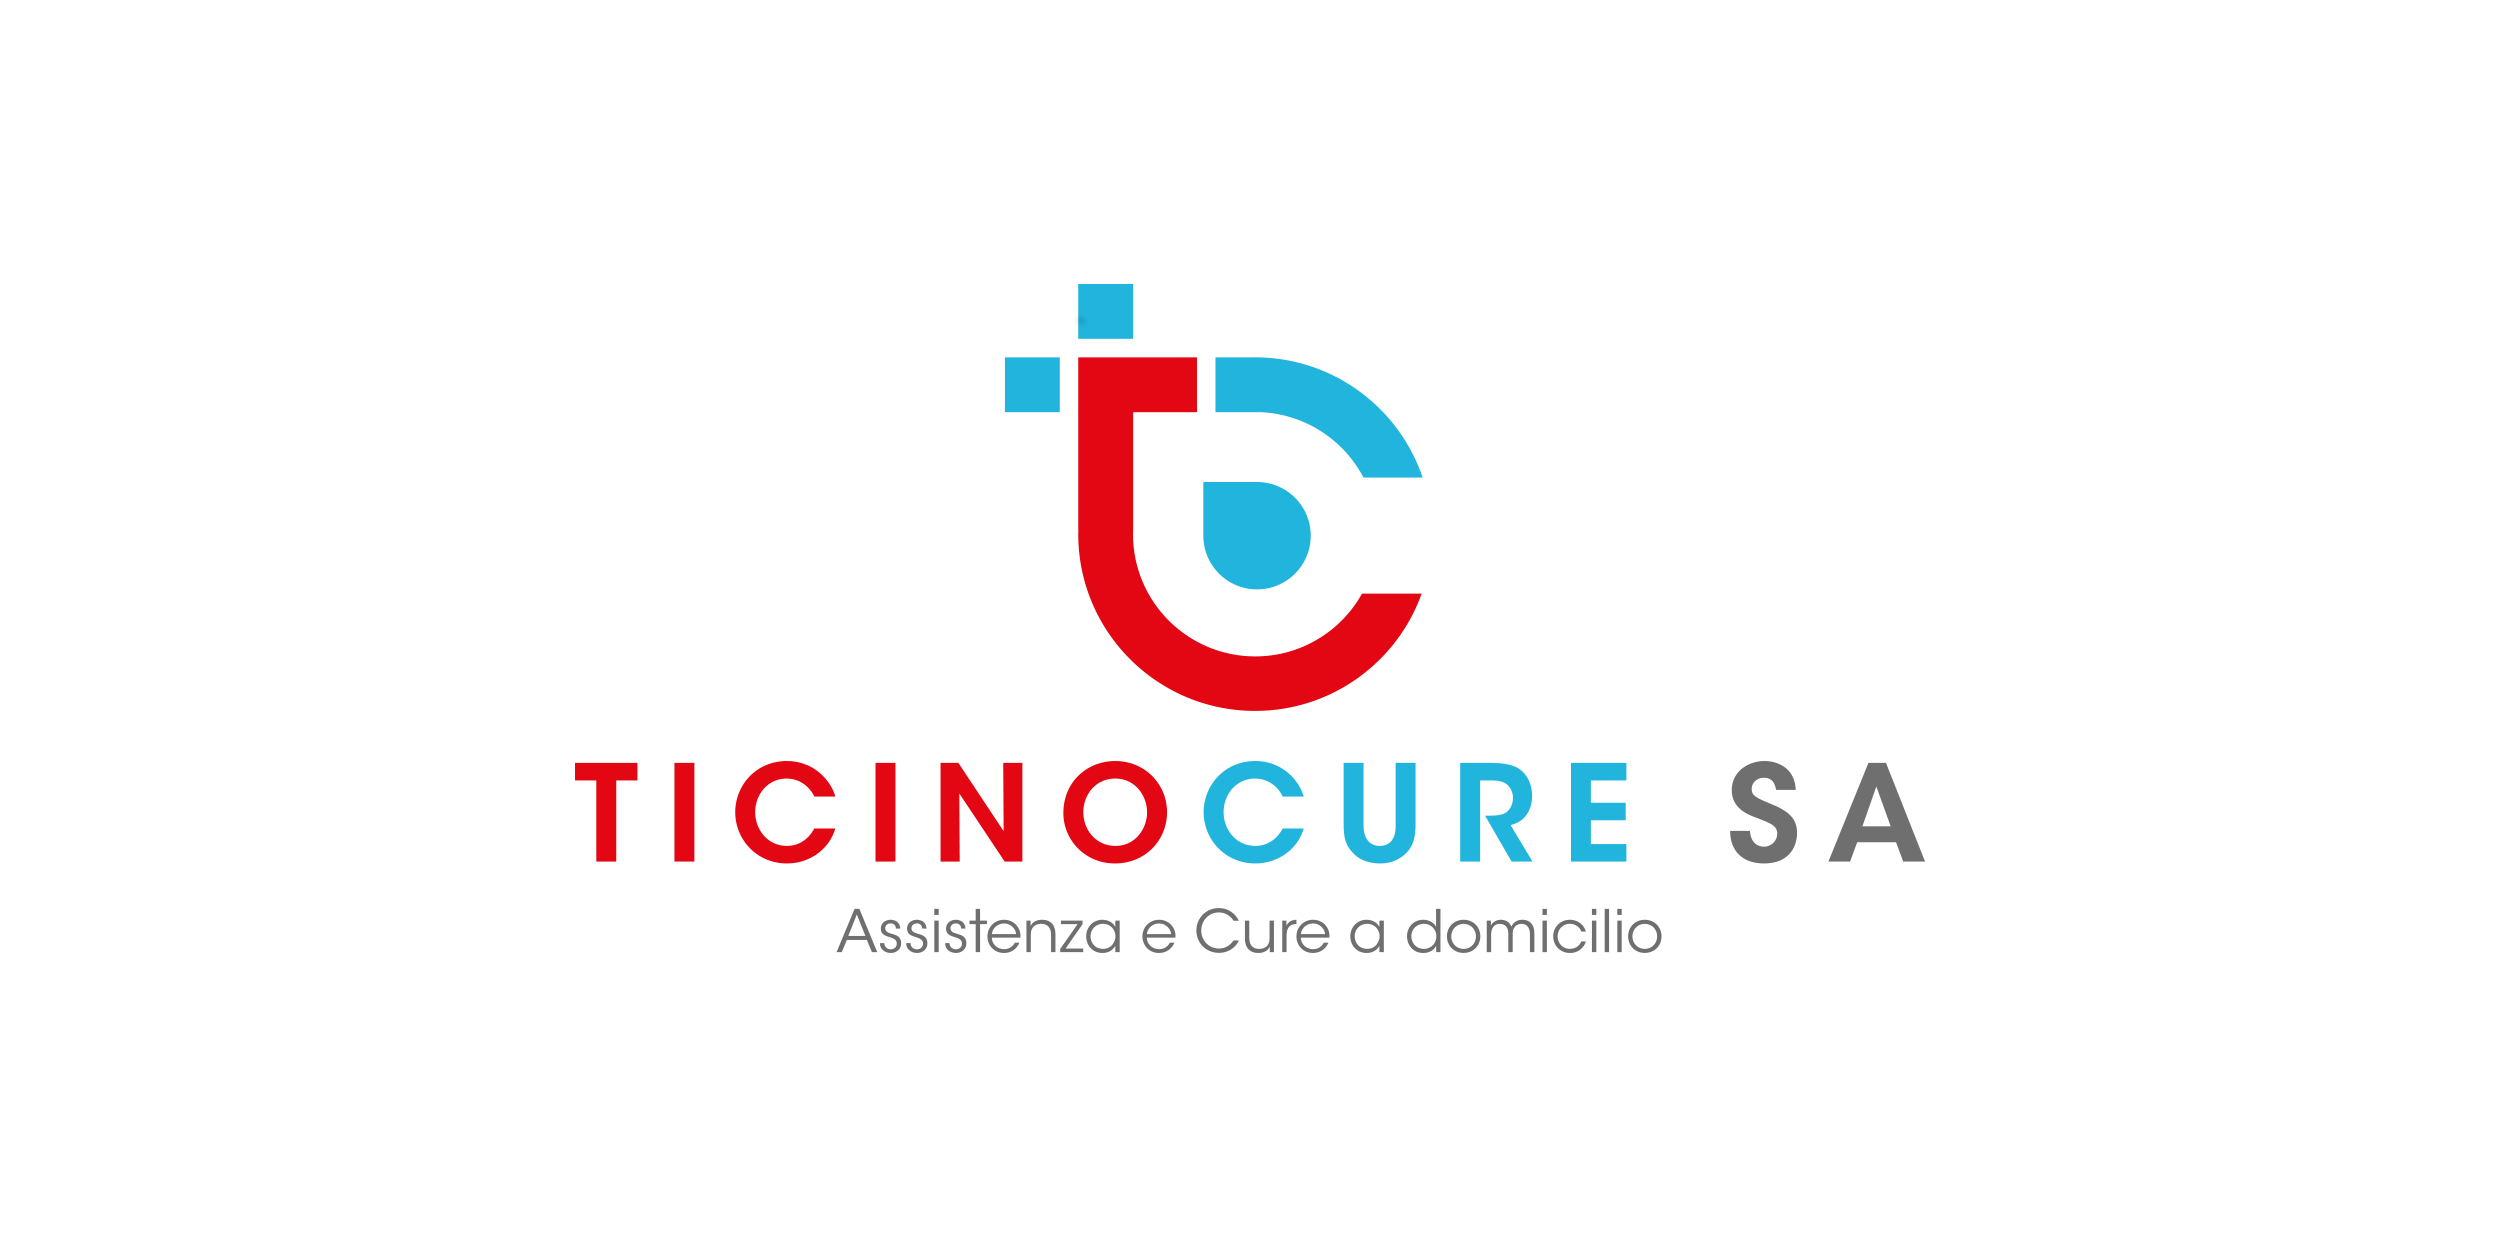 Ticinocure SA